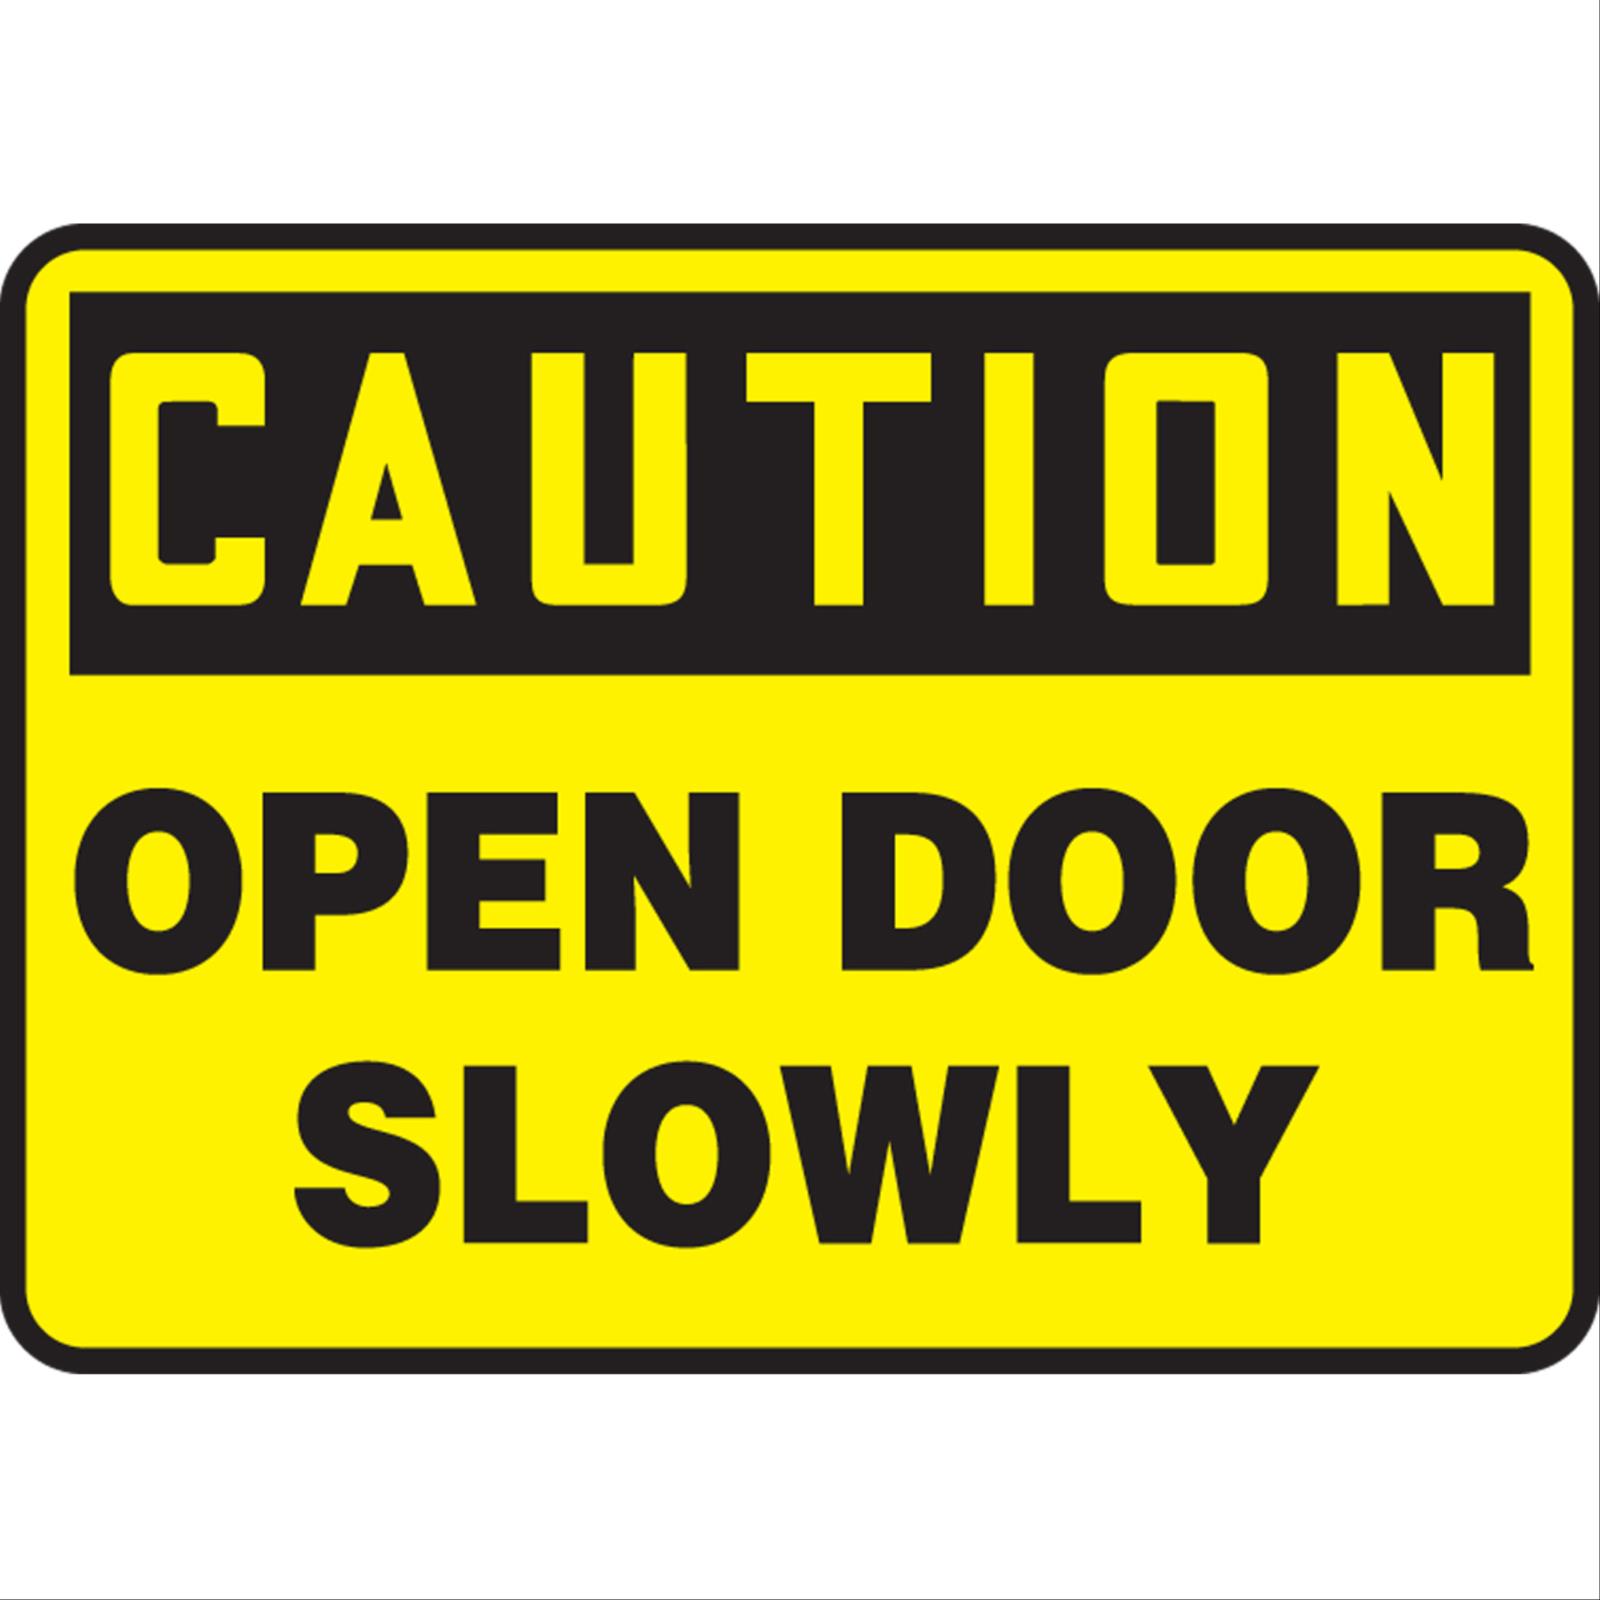 Caution Open Door Slowly Signs